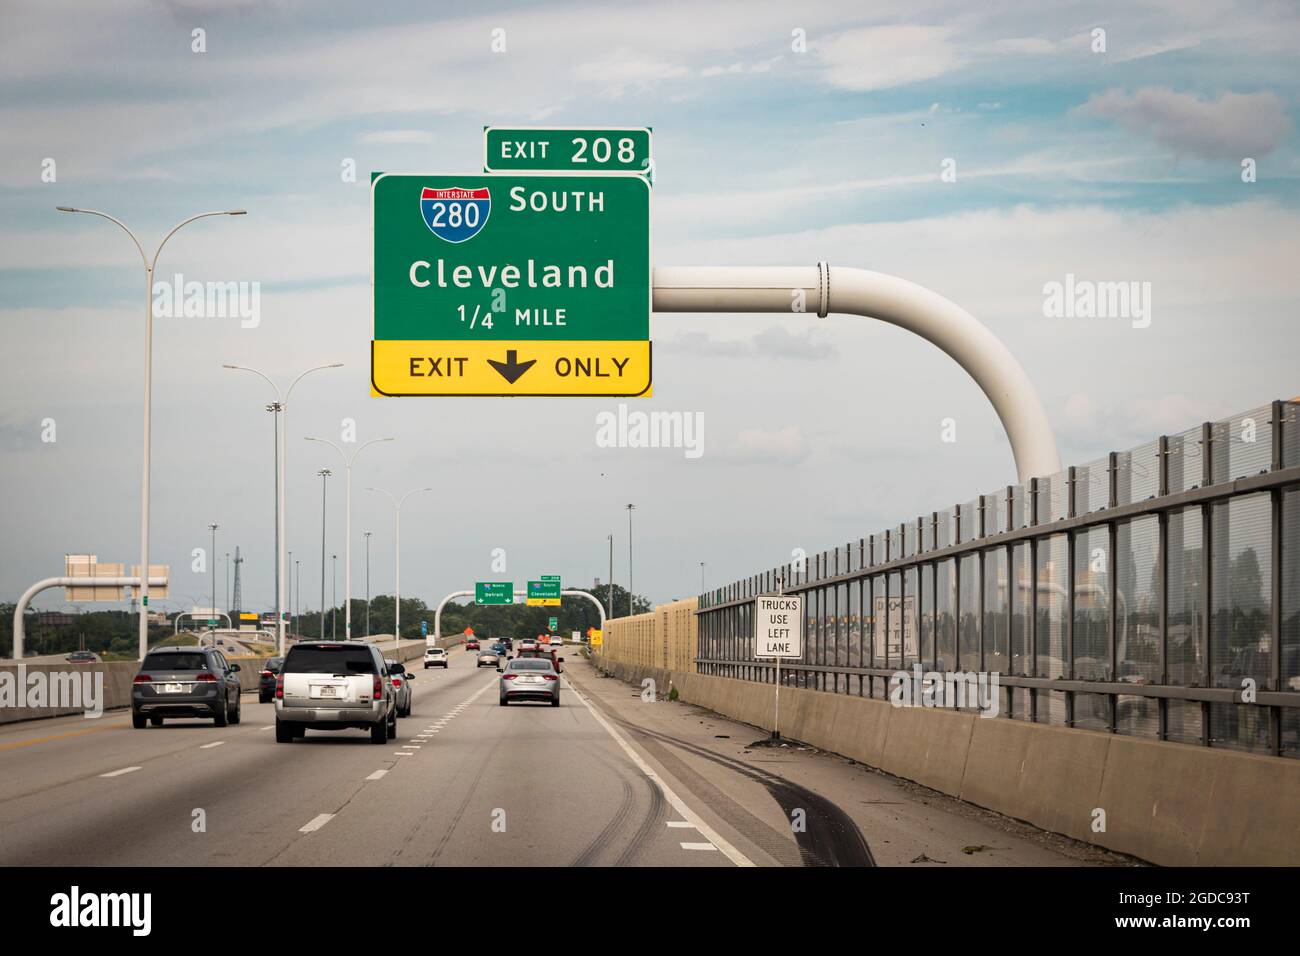 Beschilderung zur Interstate auf der I-75, mit Hinweis auf die Abfahrt zur Interstate 280 in Richtung Cleveland Stockfoto